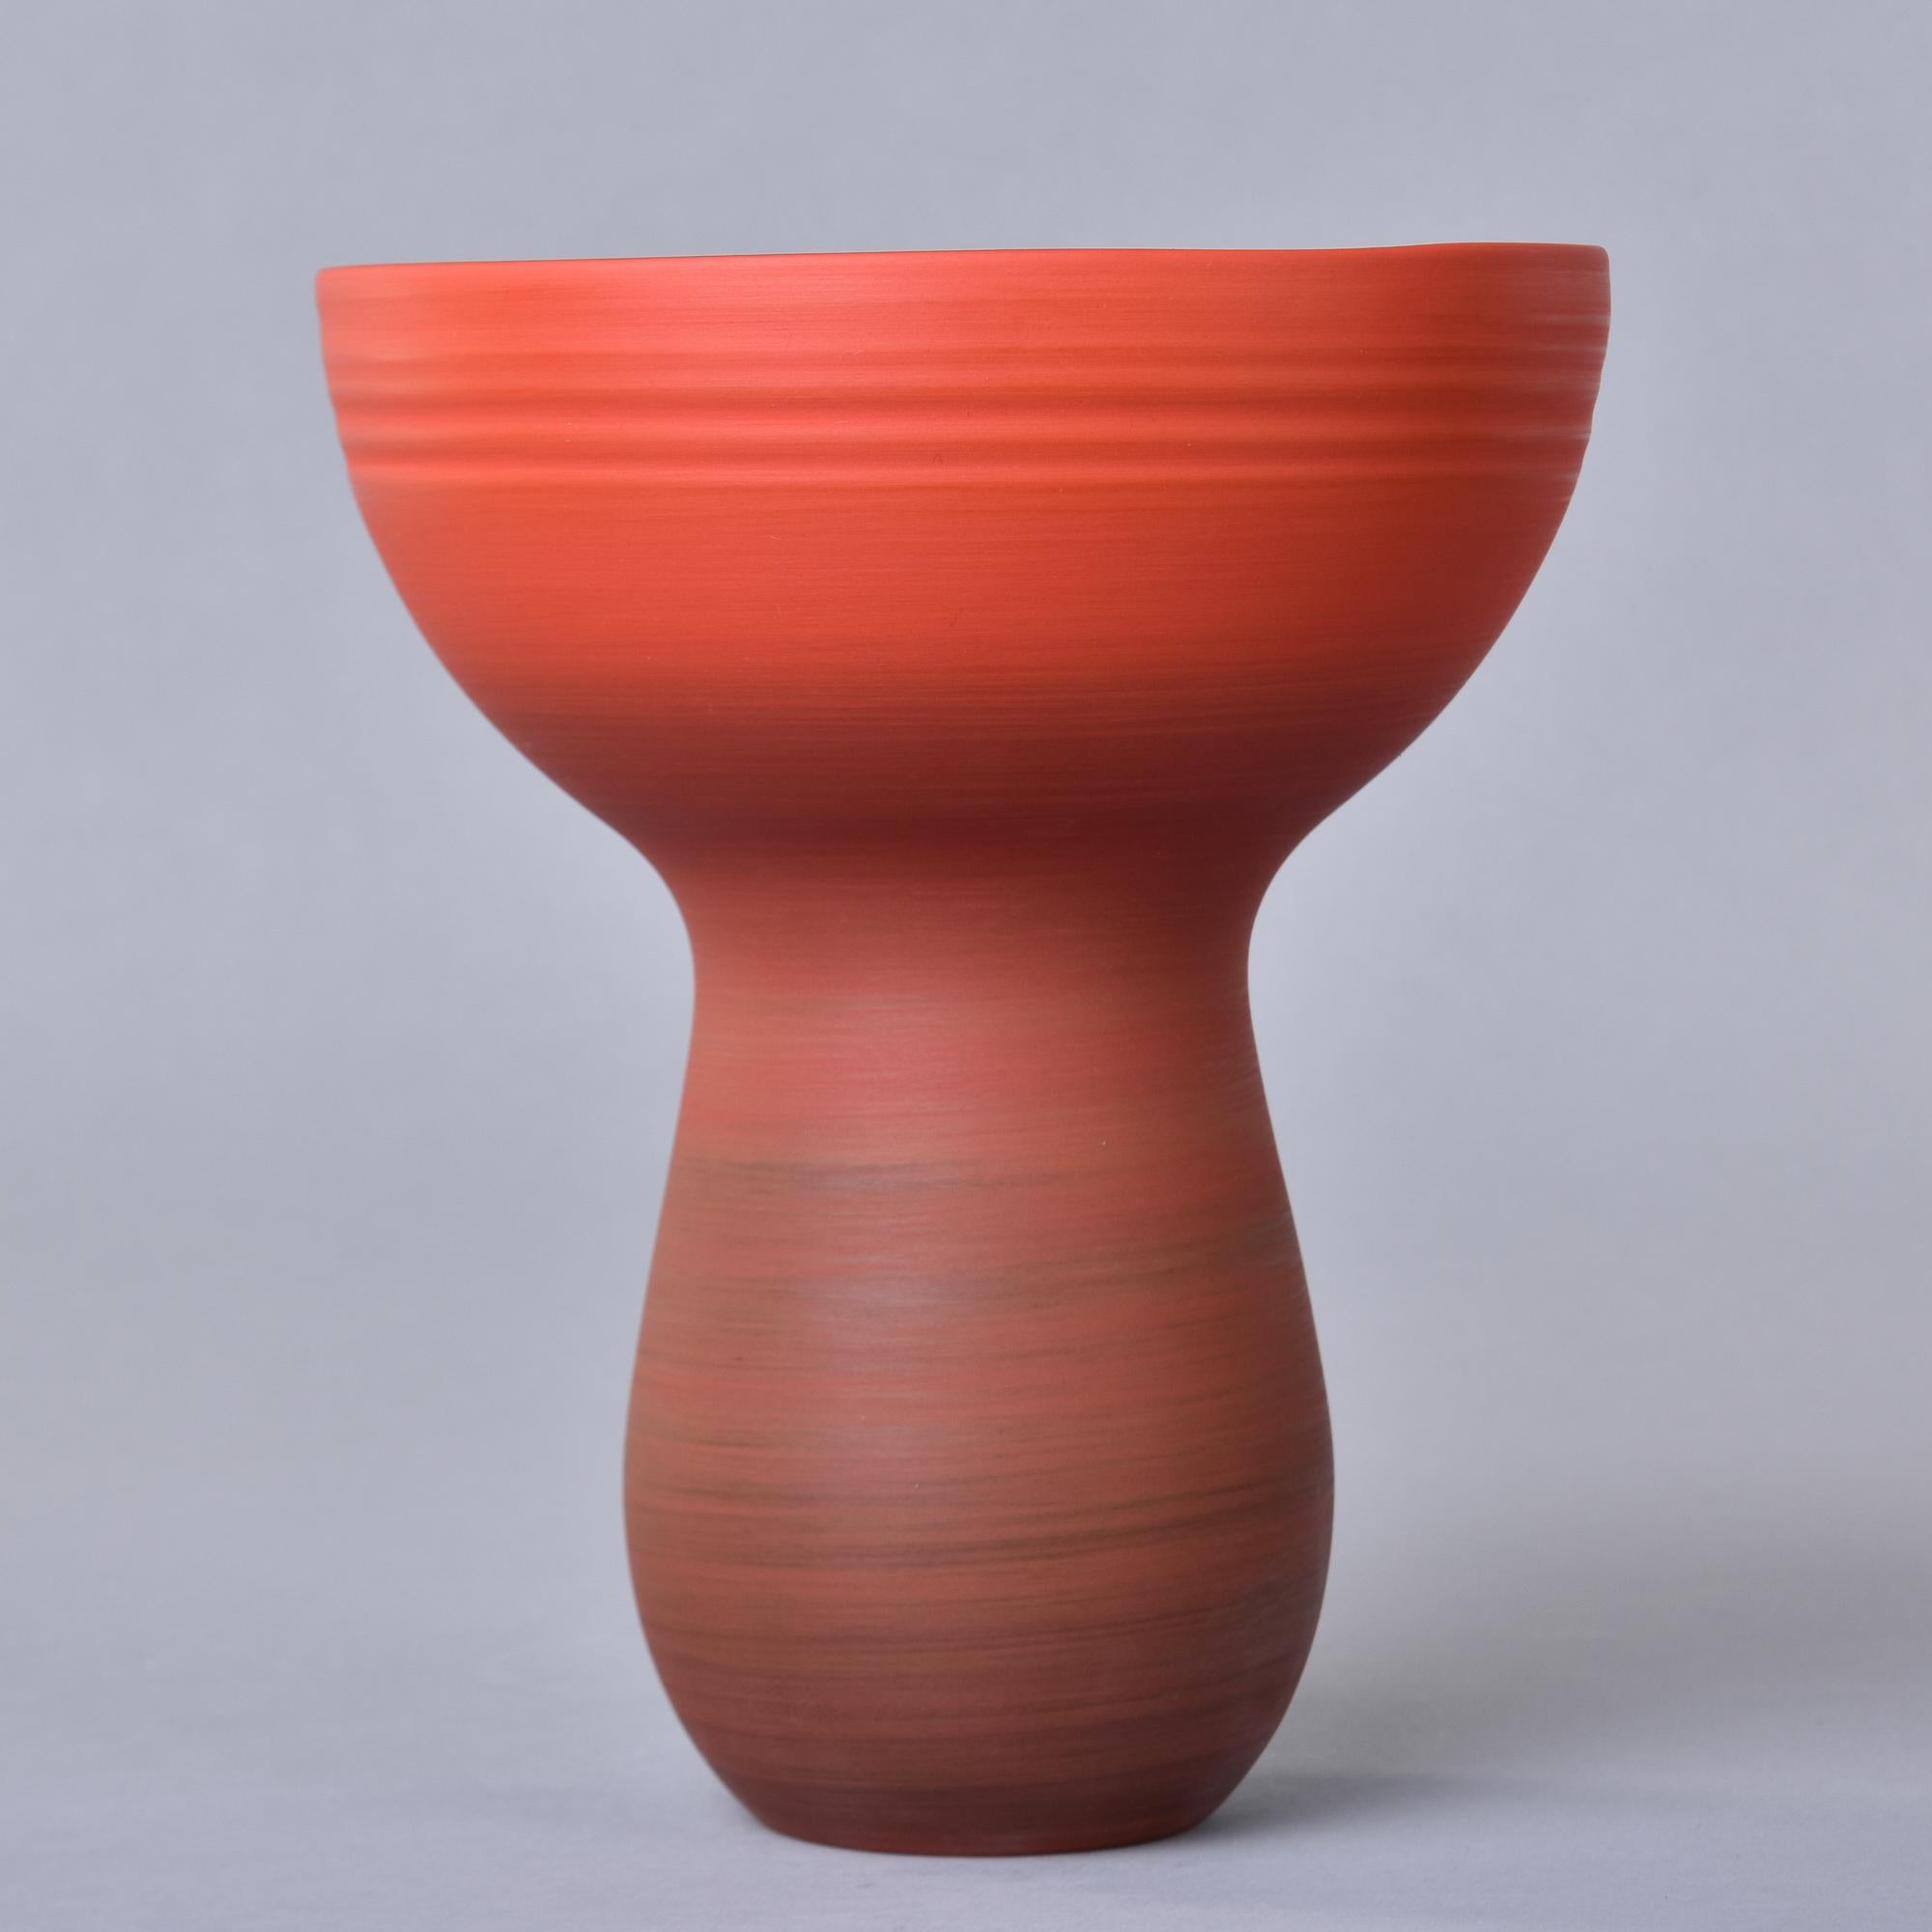 Nouveau et fabriqué en Italie par Rina Menardi, ce vase à bouquet mesure 10